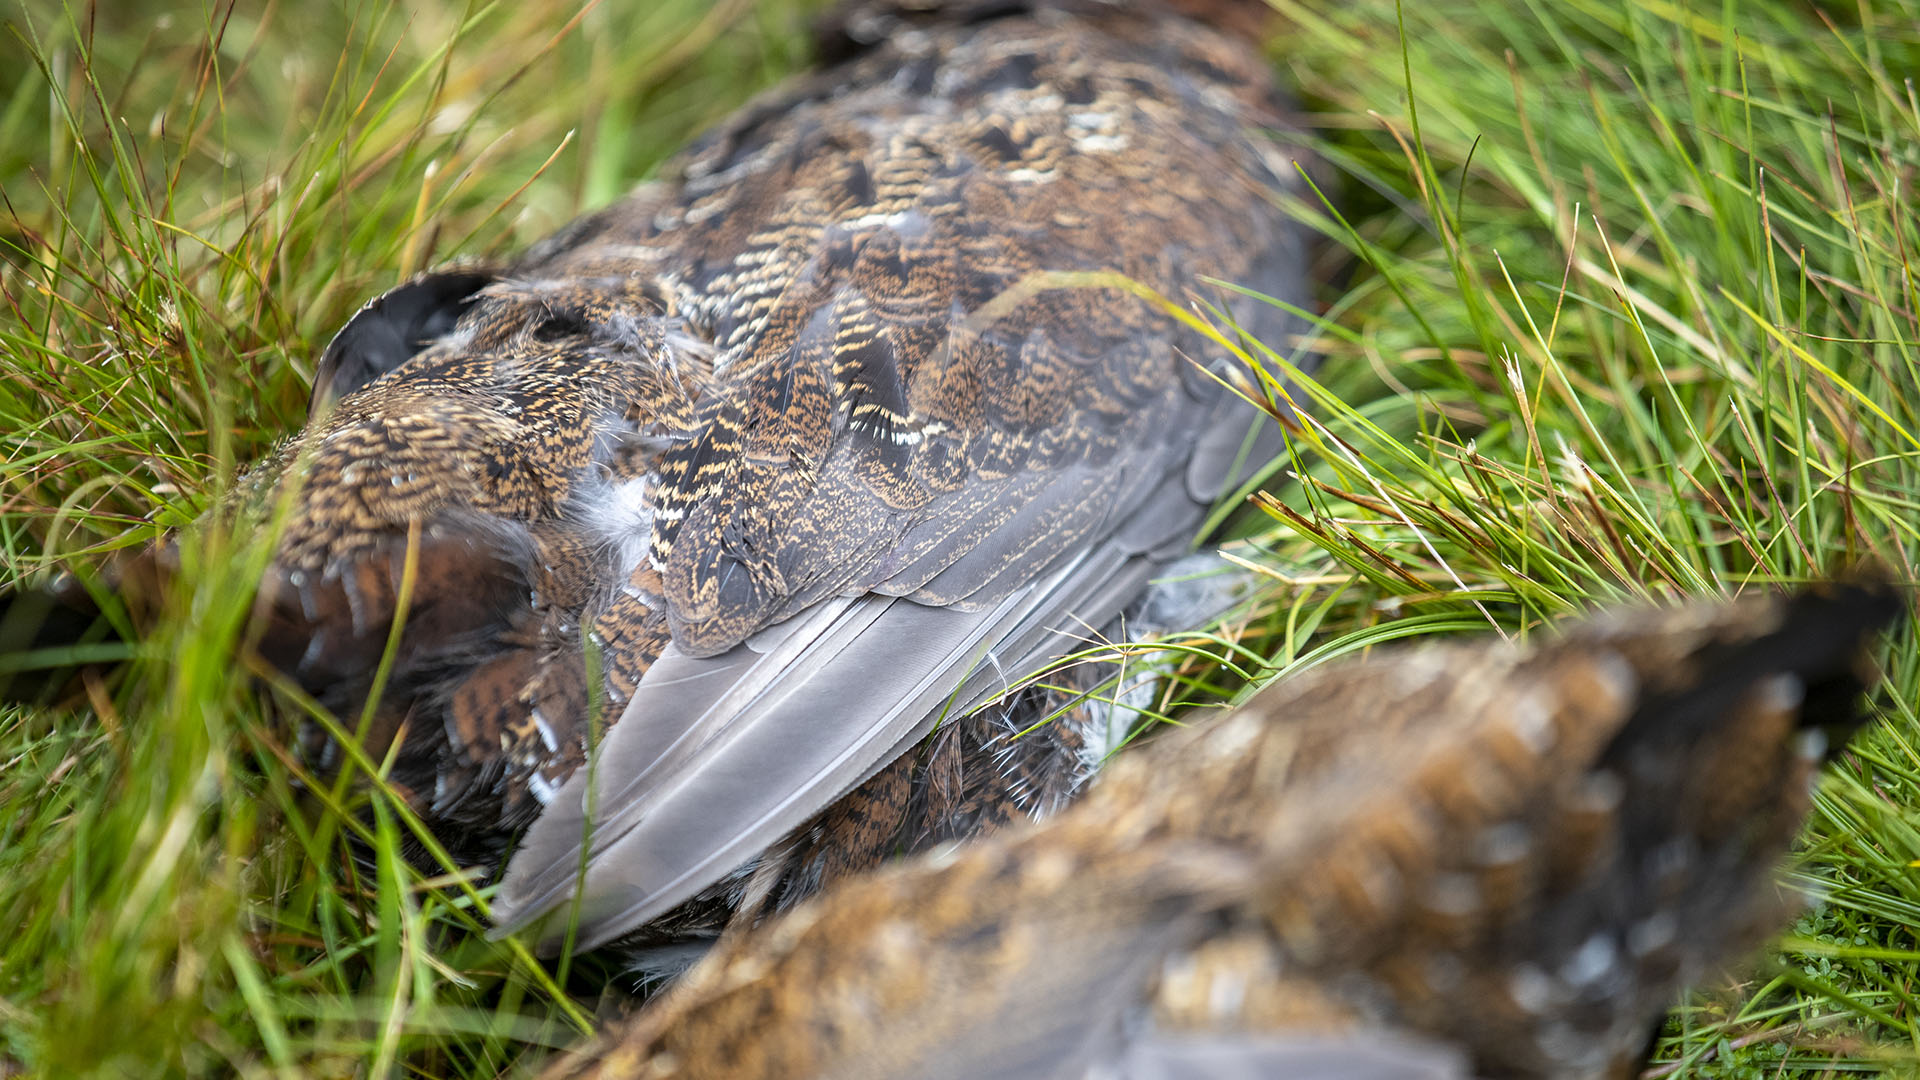 La grouse  una specie che caratterizza l'immaginario legato alla caccia in Scozia. Interventi di miglioramento dell'habitat permettono di conservare una buona popolazione della pregiata pernice